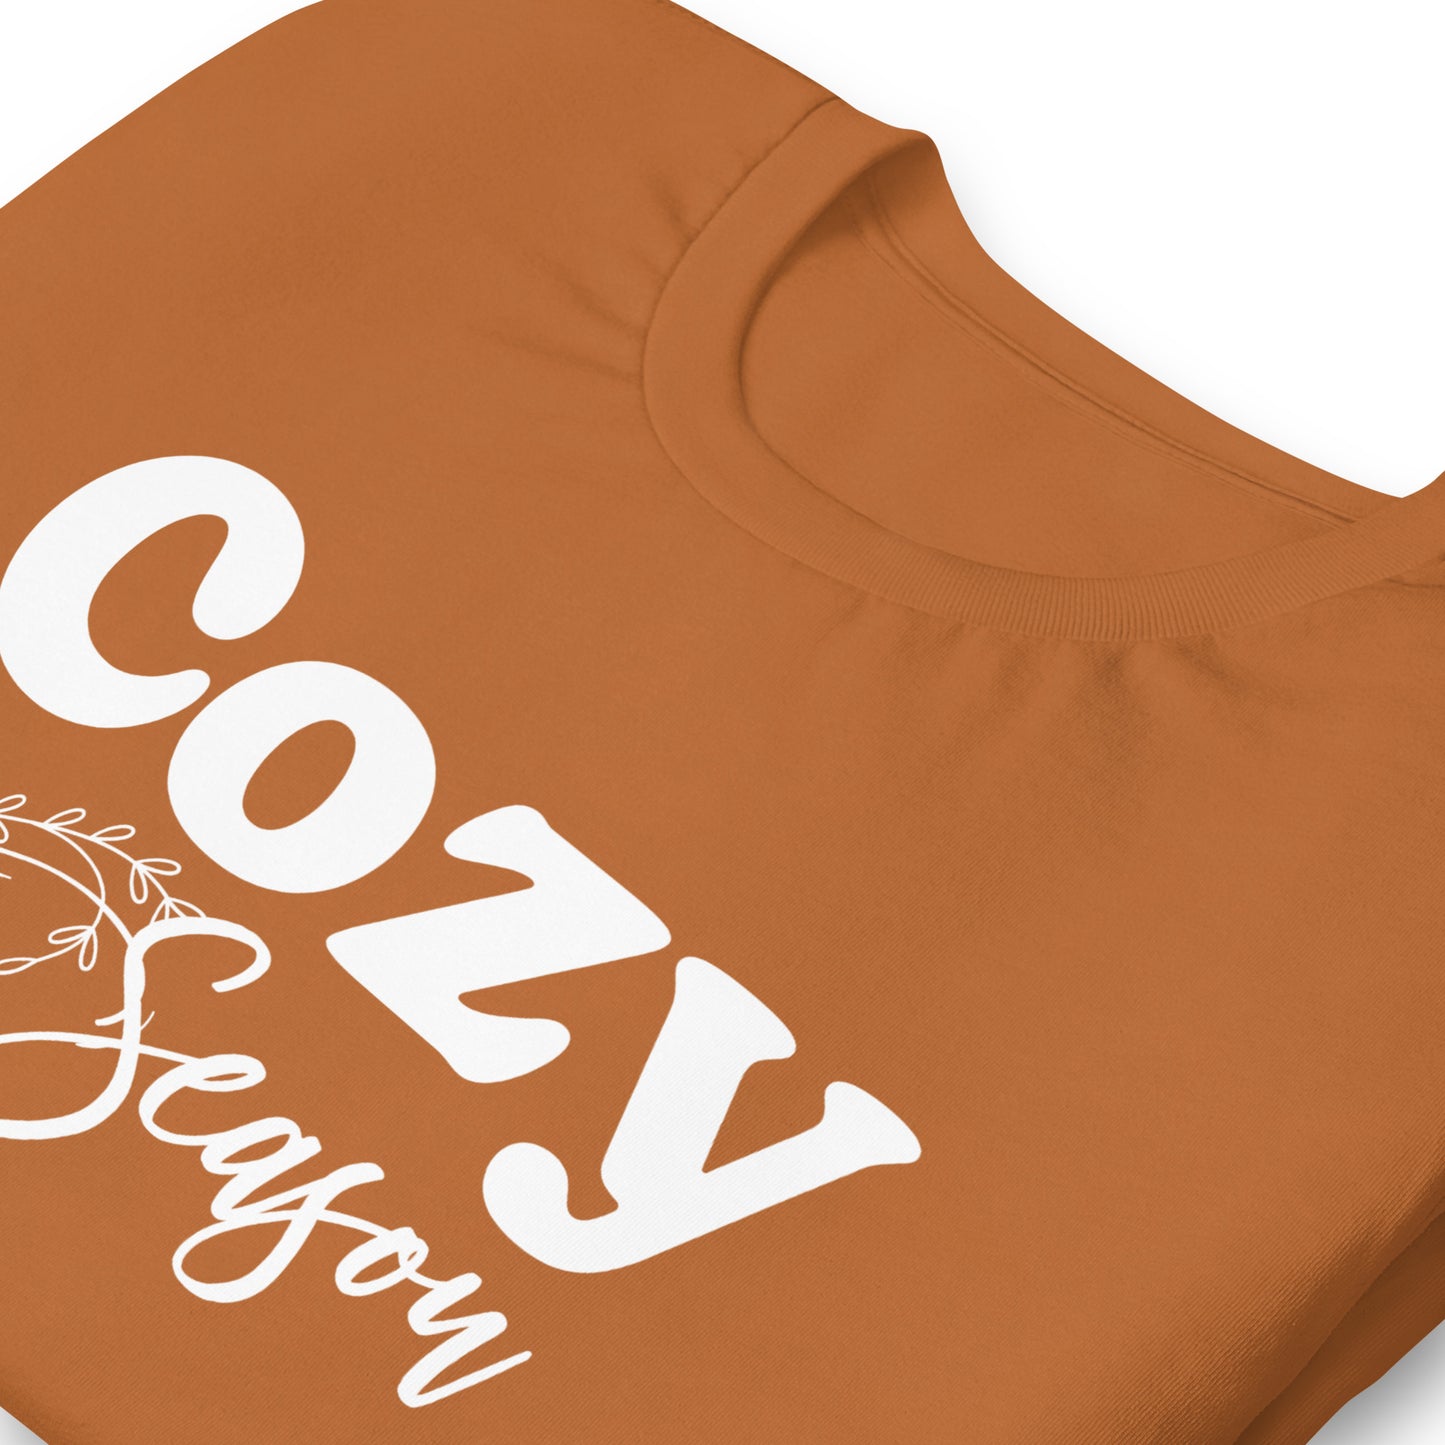 Cozy Season t-shirt